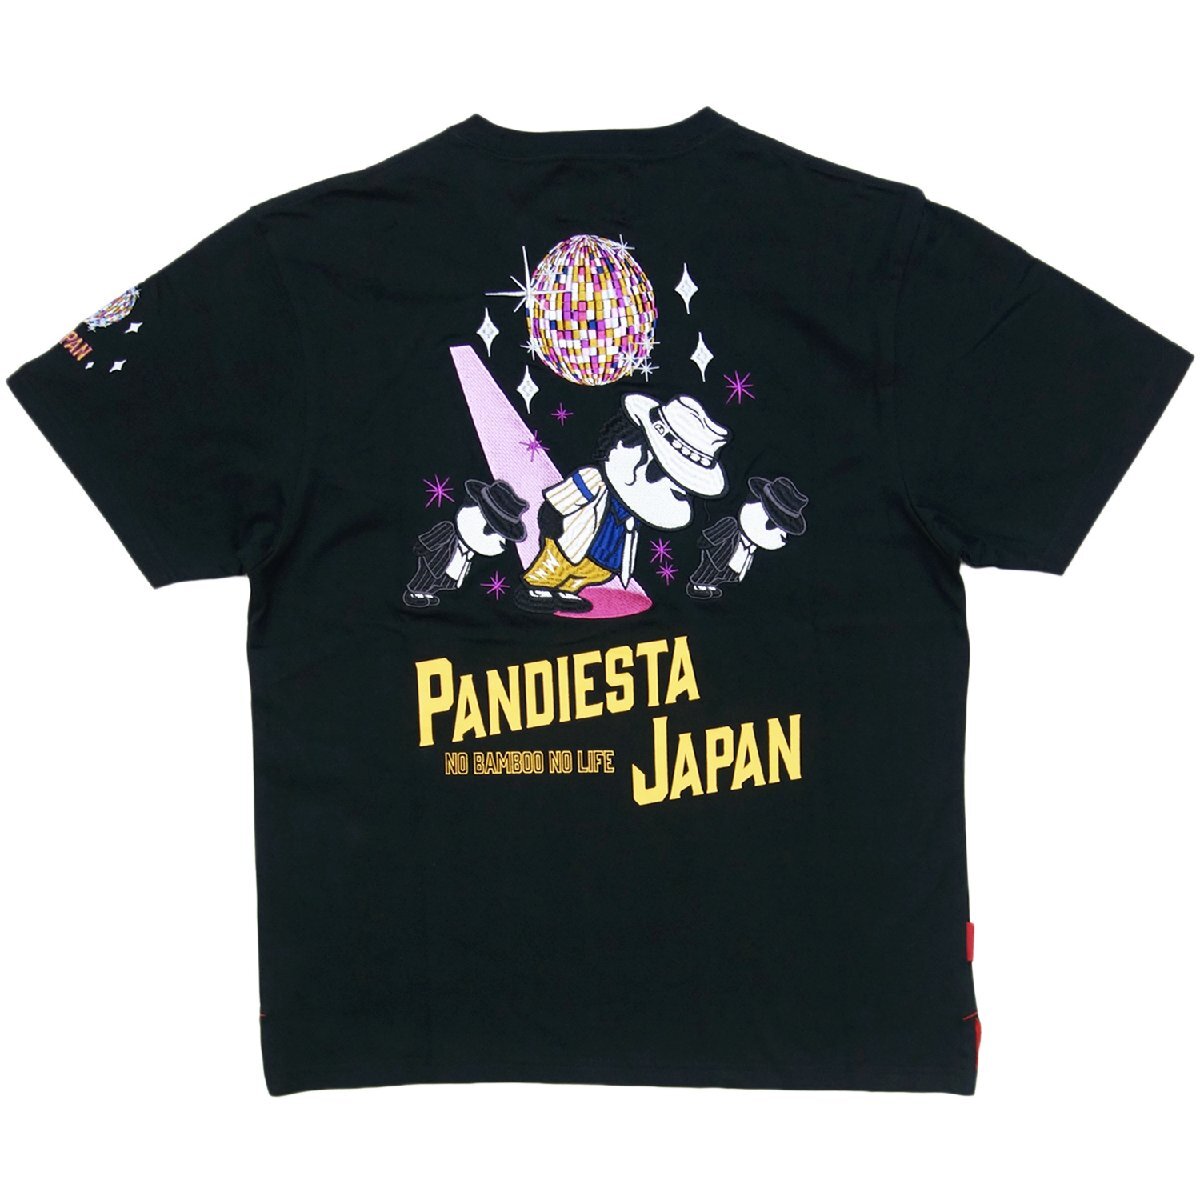 送料無料 パンディエスタ 3L (XXL) 554853 半袖 Tシャツ 黒 PANDIESTA JAPAN マイケル ジャクソン 半T 丸首 パンダ 熊猫 メンズ 新品 JF